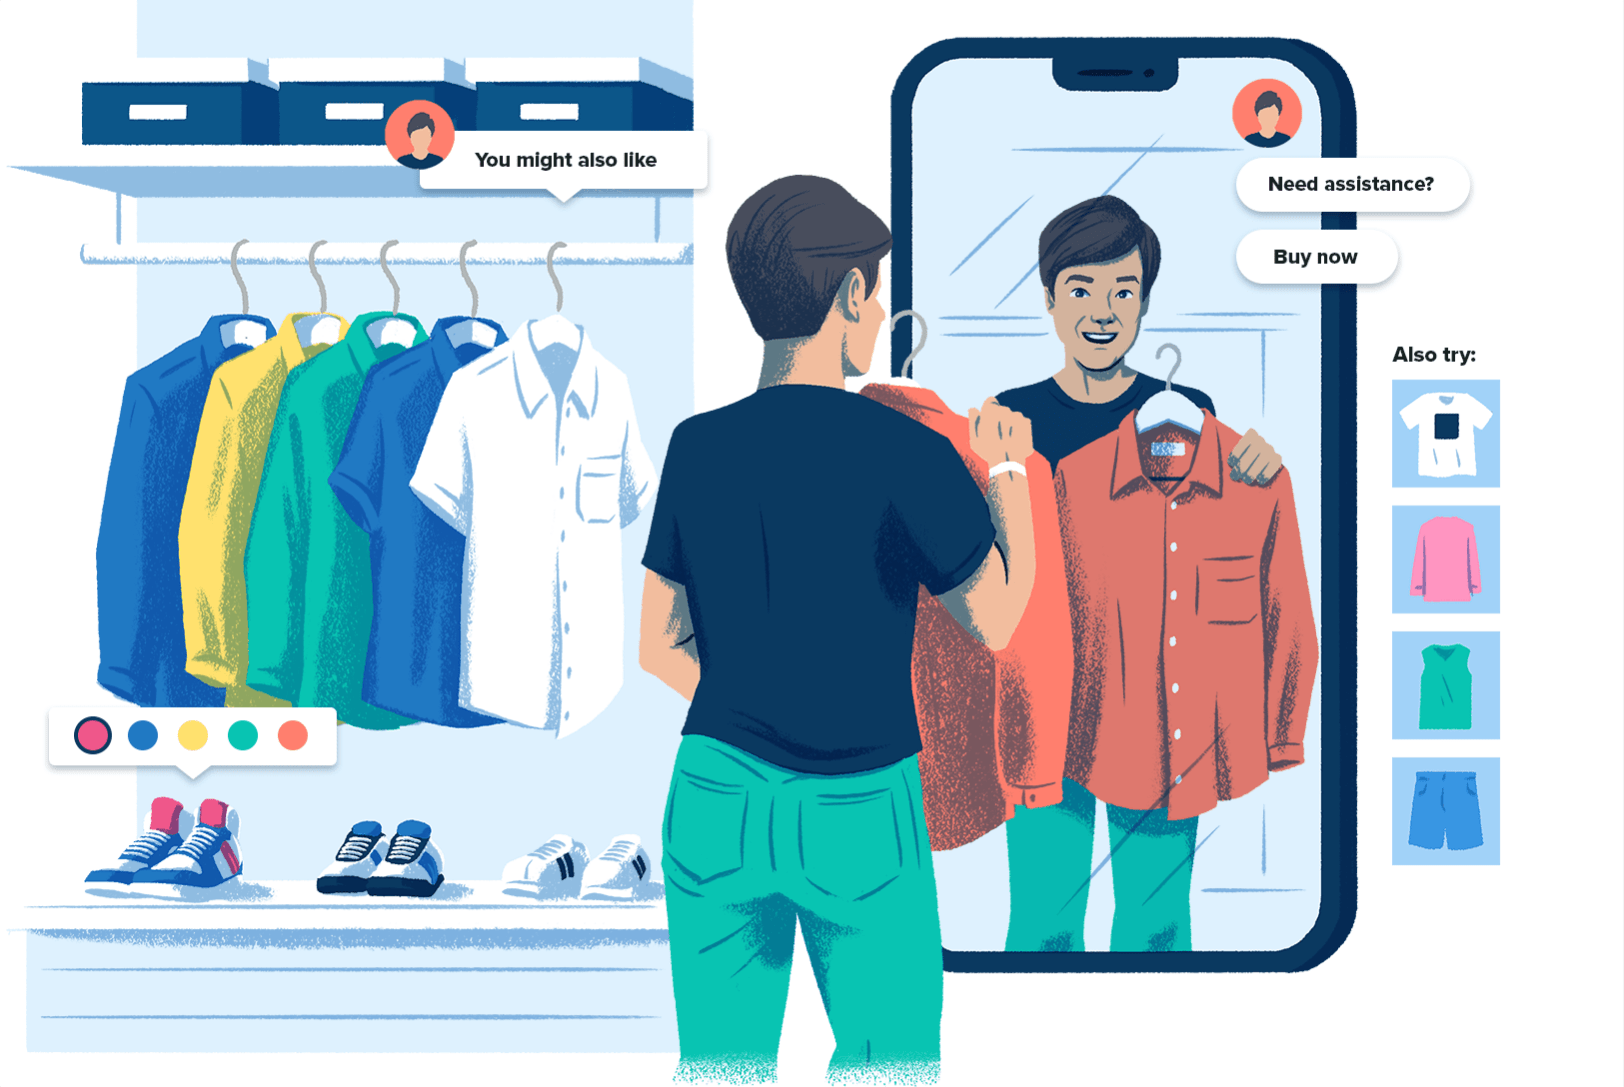 Illustrazione di una persona che si guarda in uno specchio a forma di smartphone in un negozio di abbigliamento in cui vi sono pulsanti di shopping online sulla merce, per rappresentare che l'esperienza di shopping sui social è simile a fare acquisti in negozio.